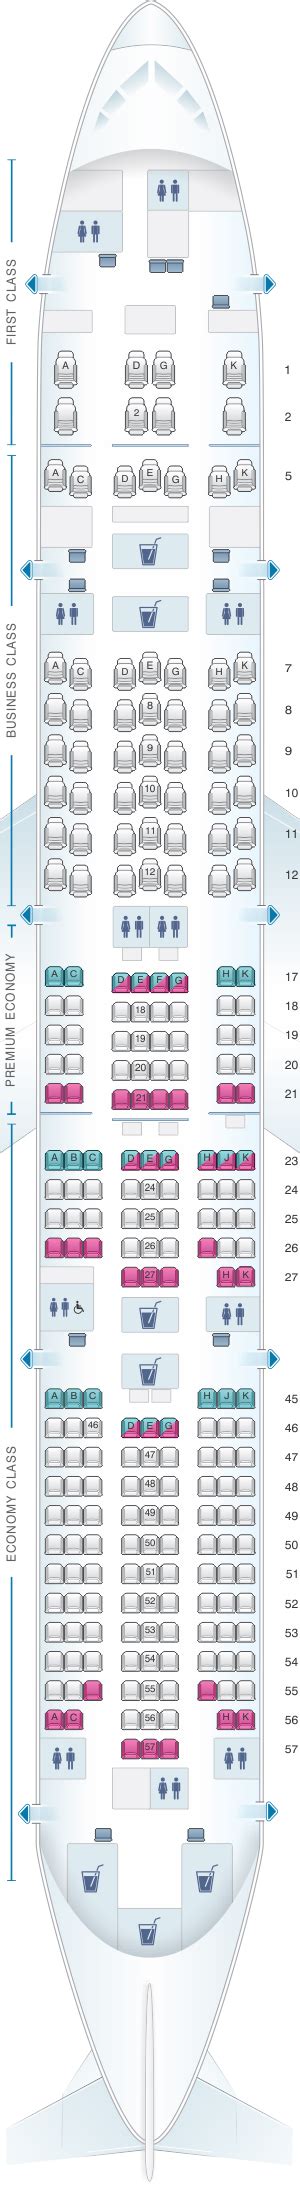 Plan De Cabine Japan Airlines Jal Boeing B777 300er W84 Seatmaestrofr